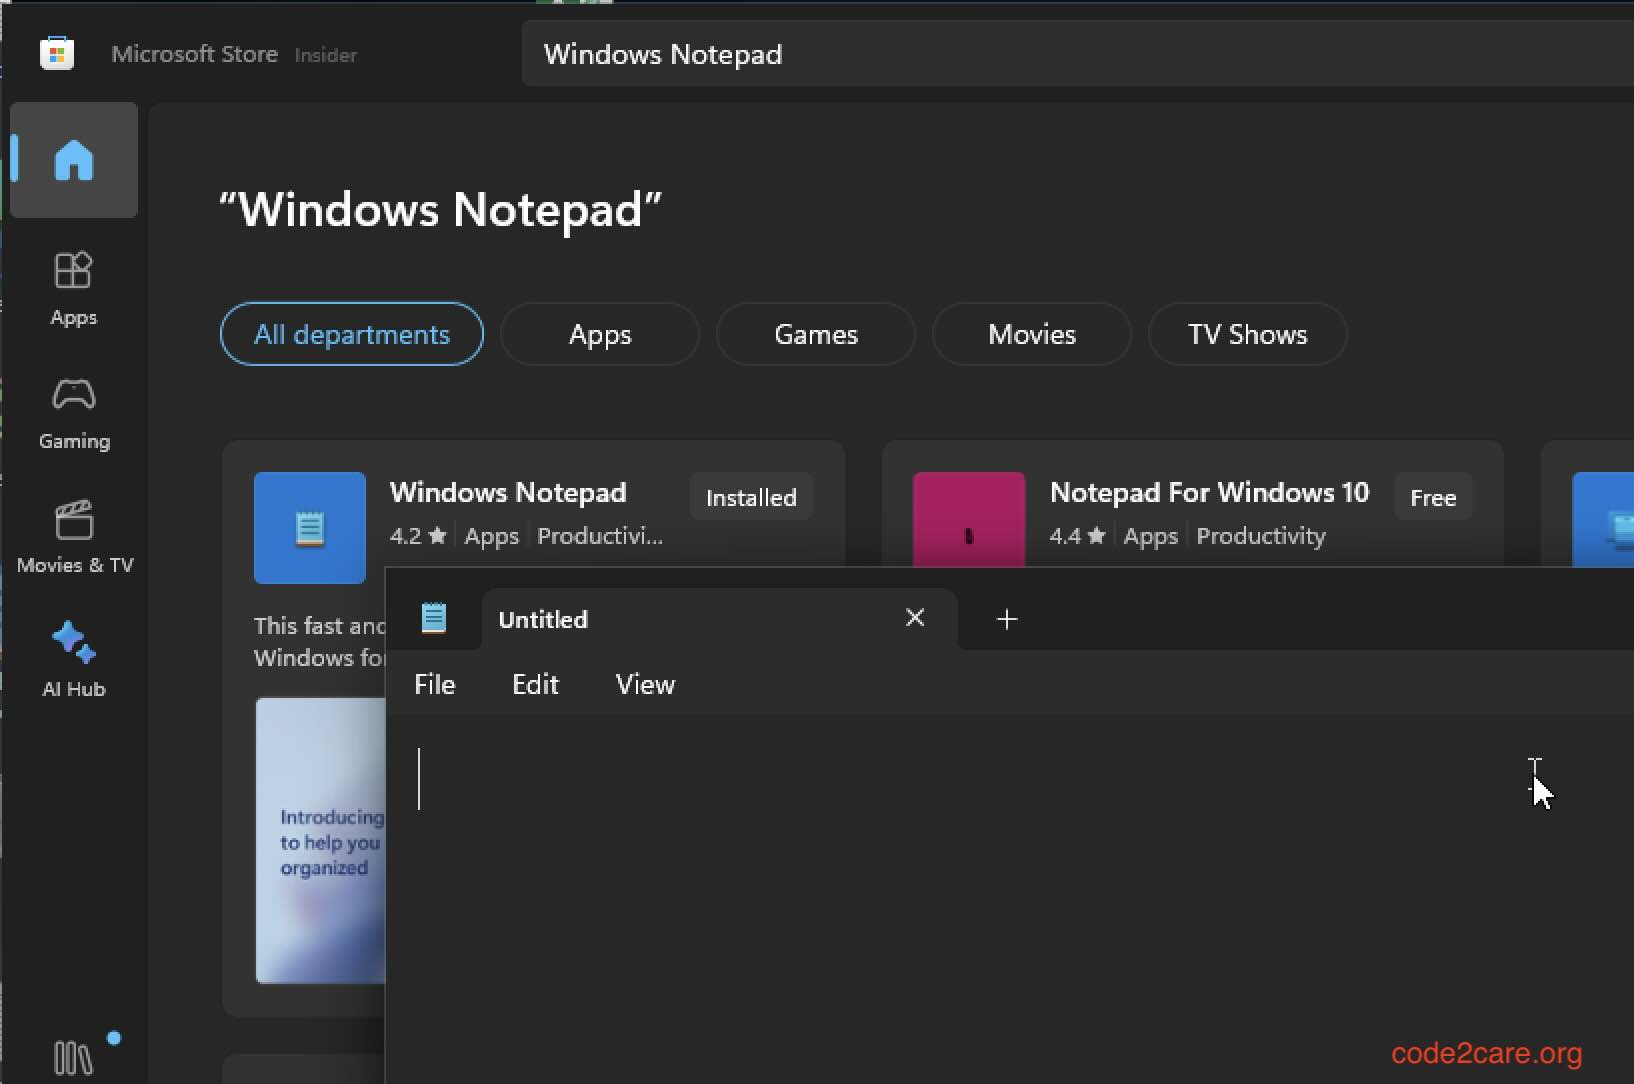 Open Notepad on Windows